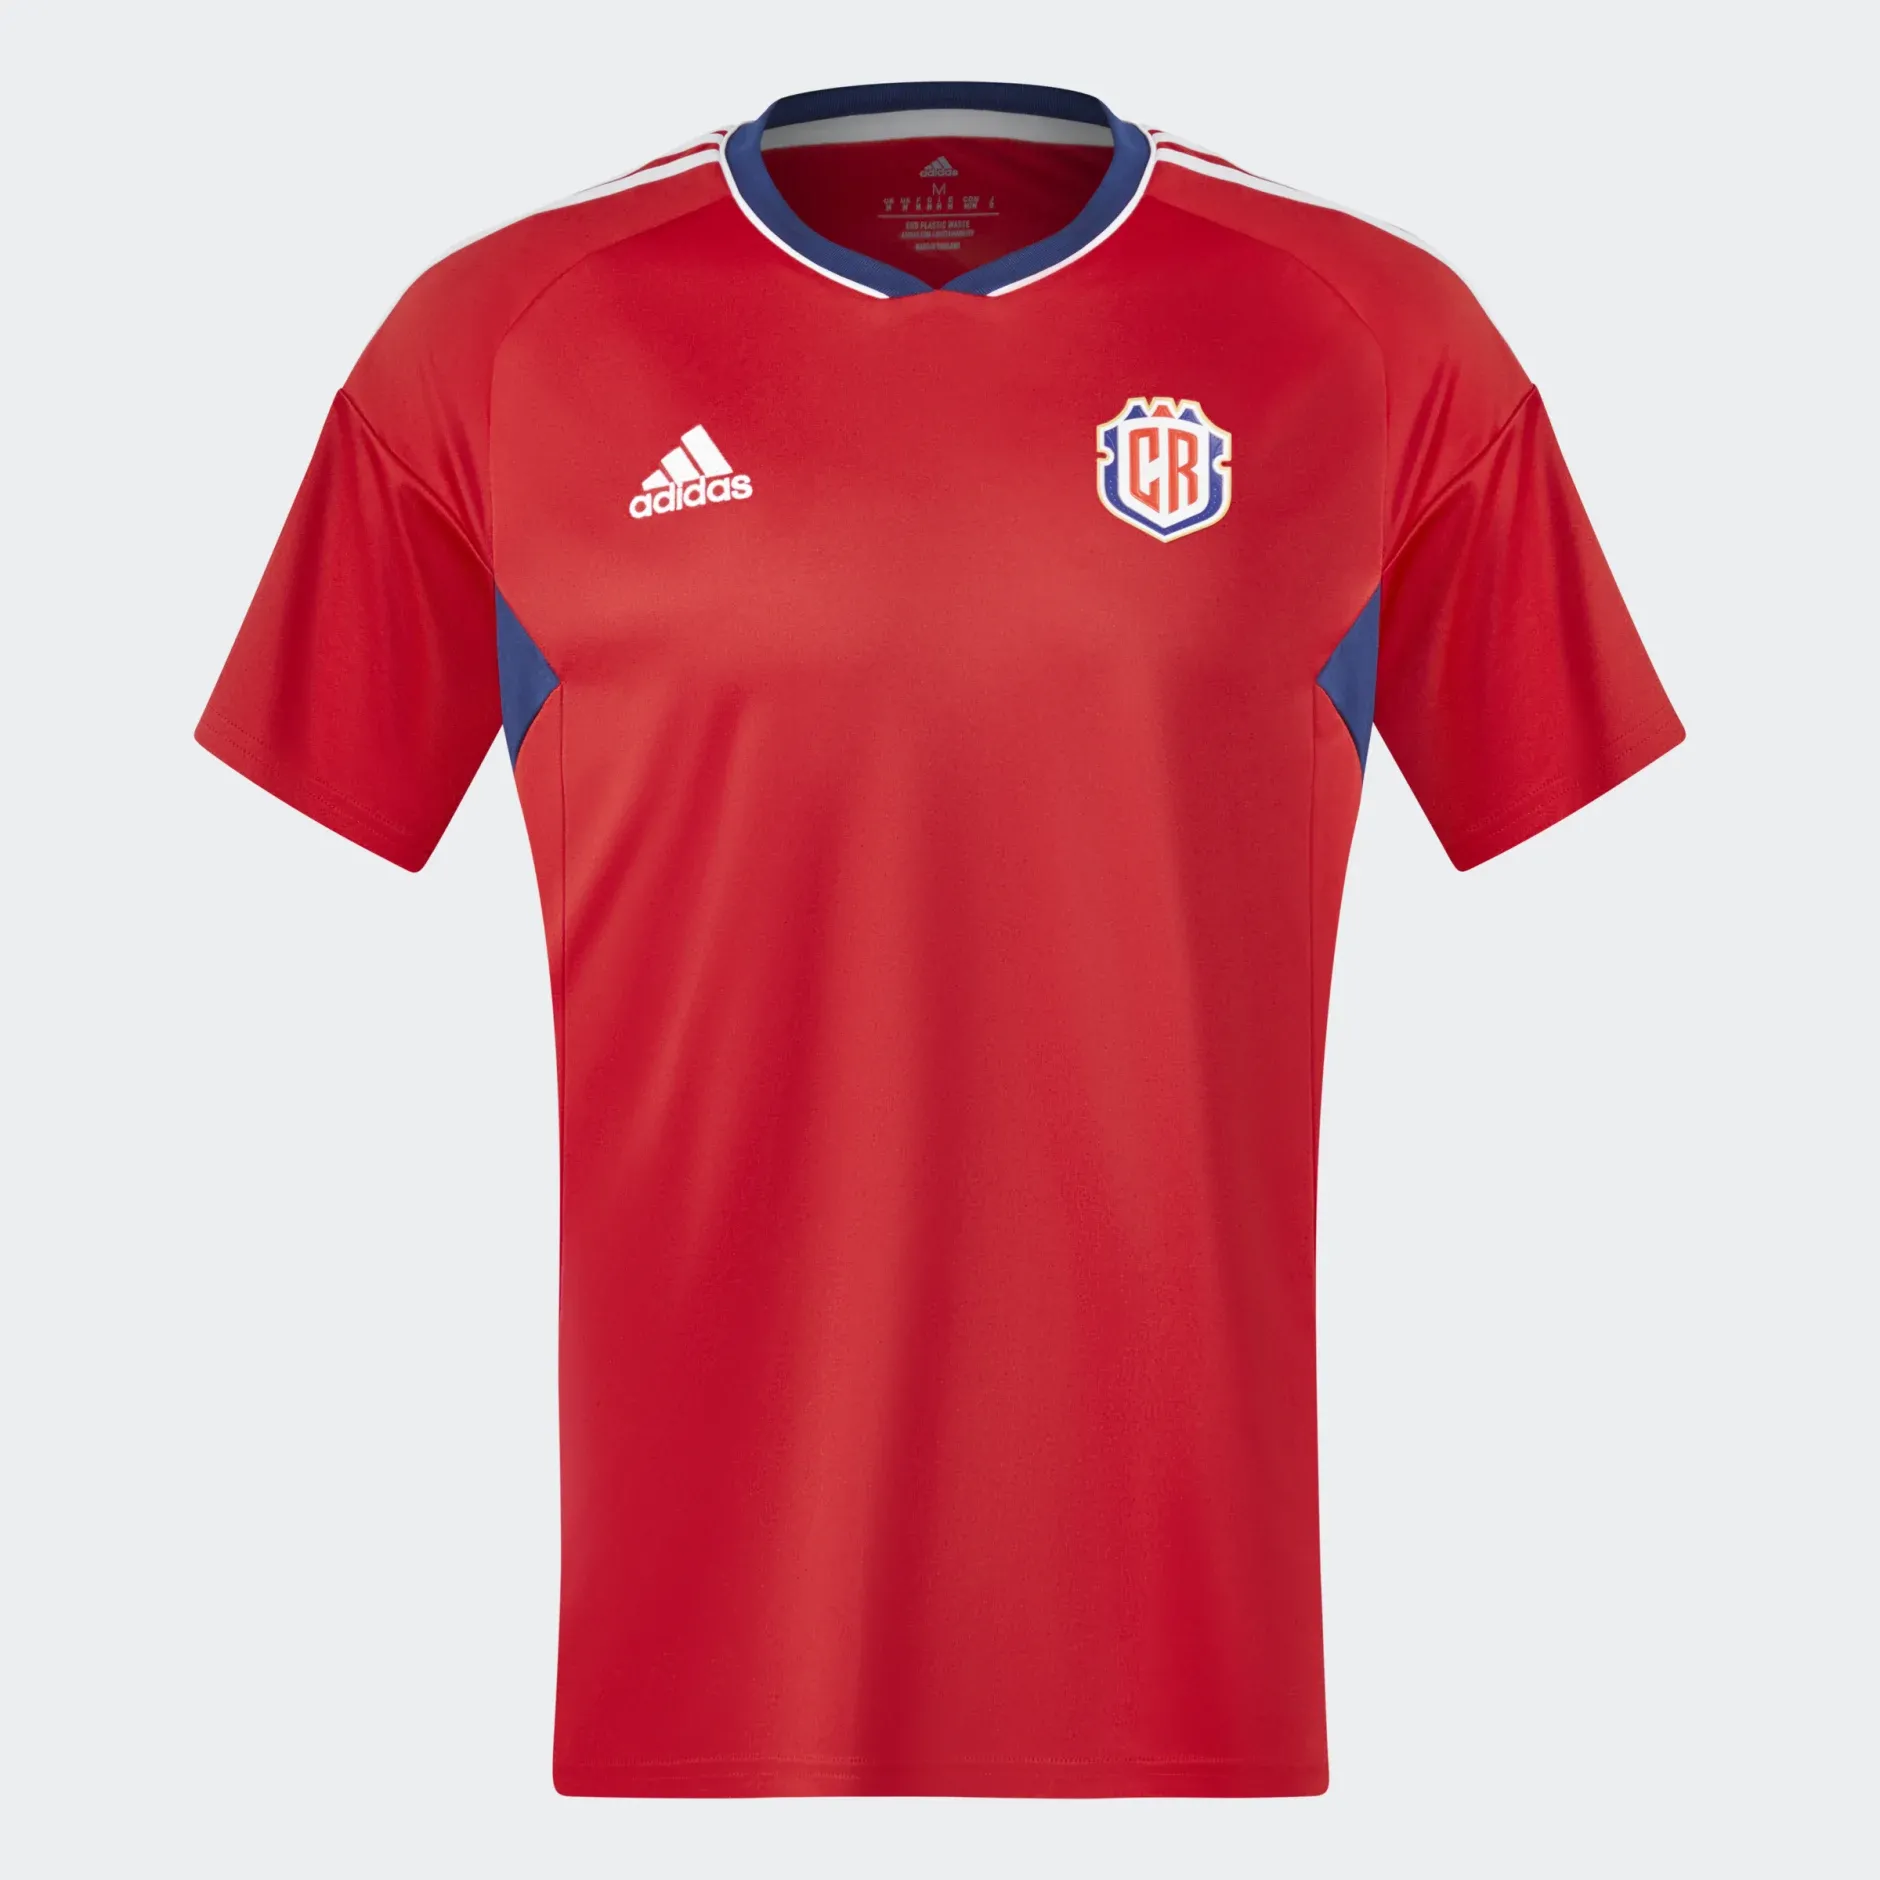 La camiseta de Costa Rica tiene al rojo intenso como protagonista. Además, resaltan detalles en azul en axilas y cuello, mientras que los tres ribetes de la marca son blancos.